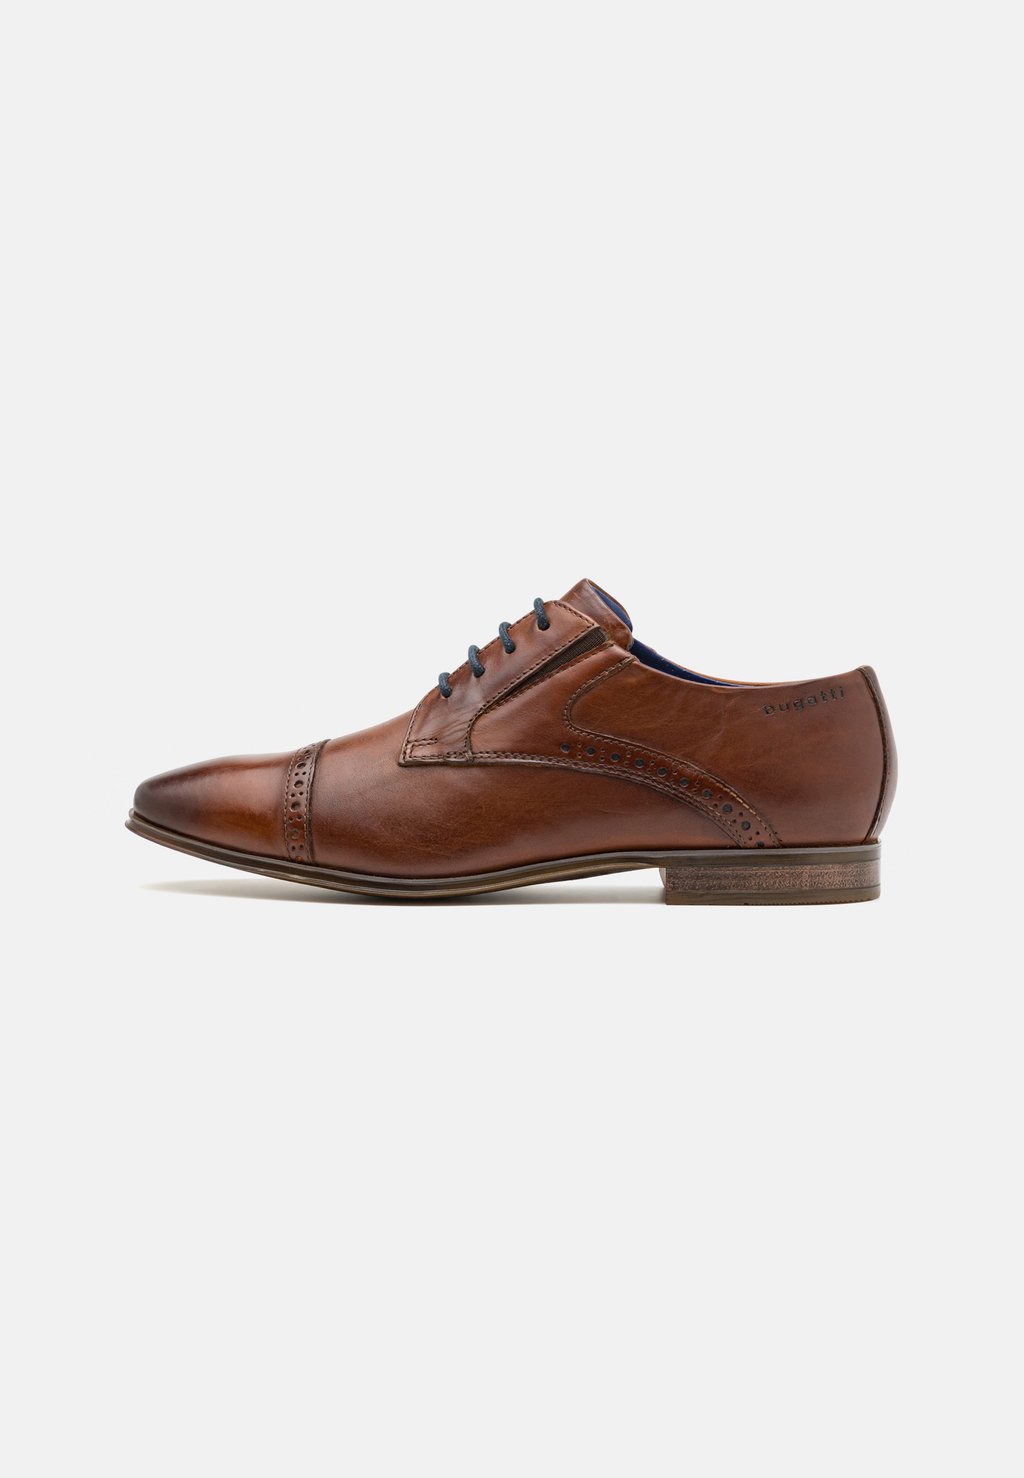 Элегантные туфли на шнуровке Morino bugatti, цвет cognac